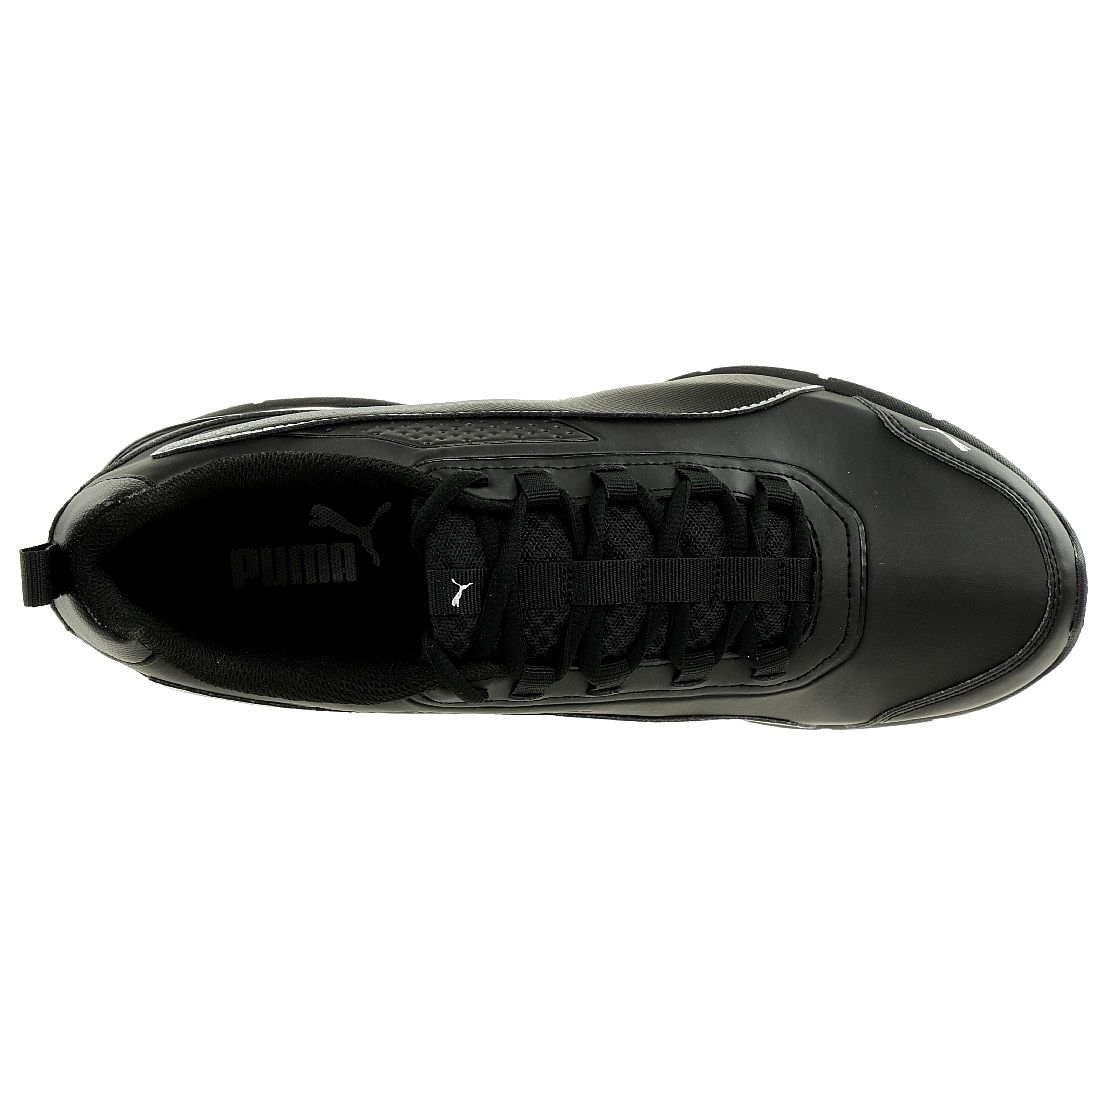 Puma Leader VT SL Unisex Sneaker Schuhe Laufschuhe 365291 02